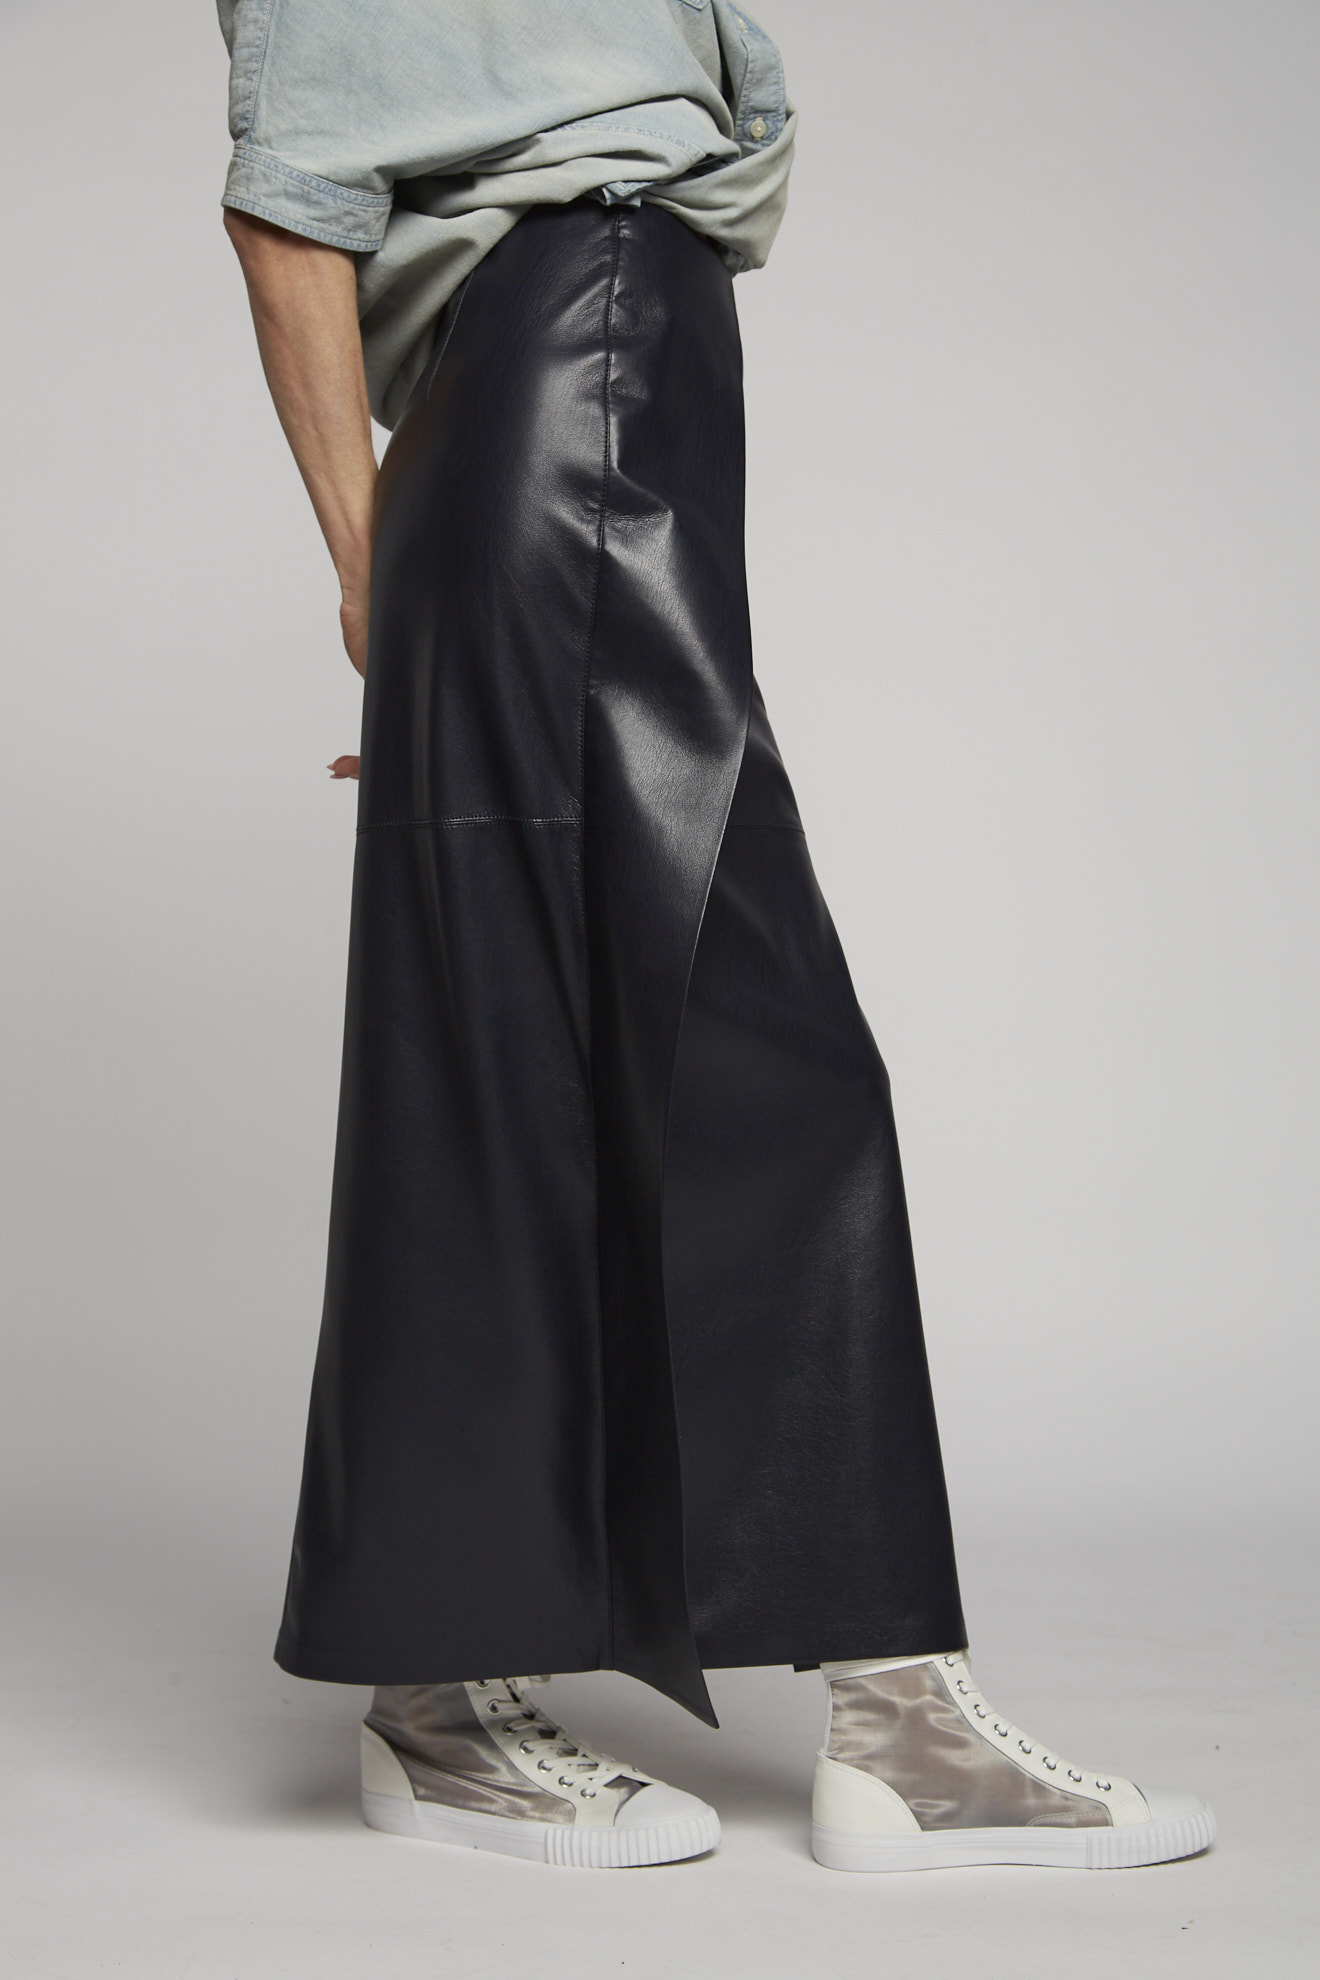 nanushka skirt black plain vegan leather model side